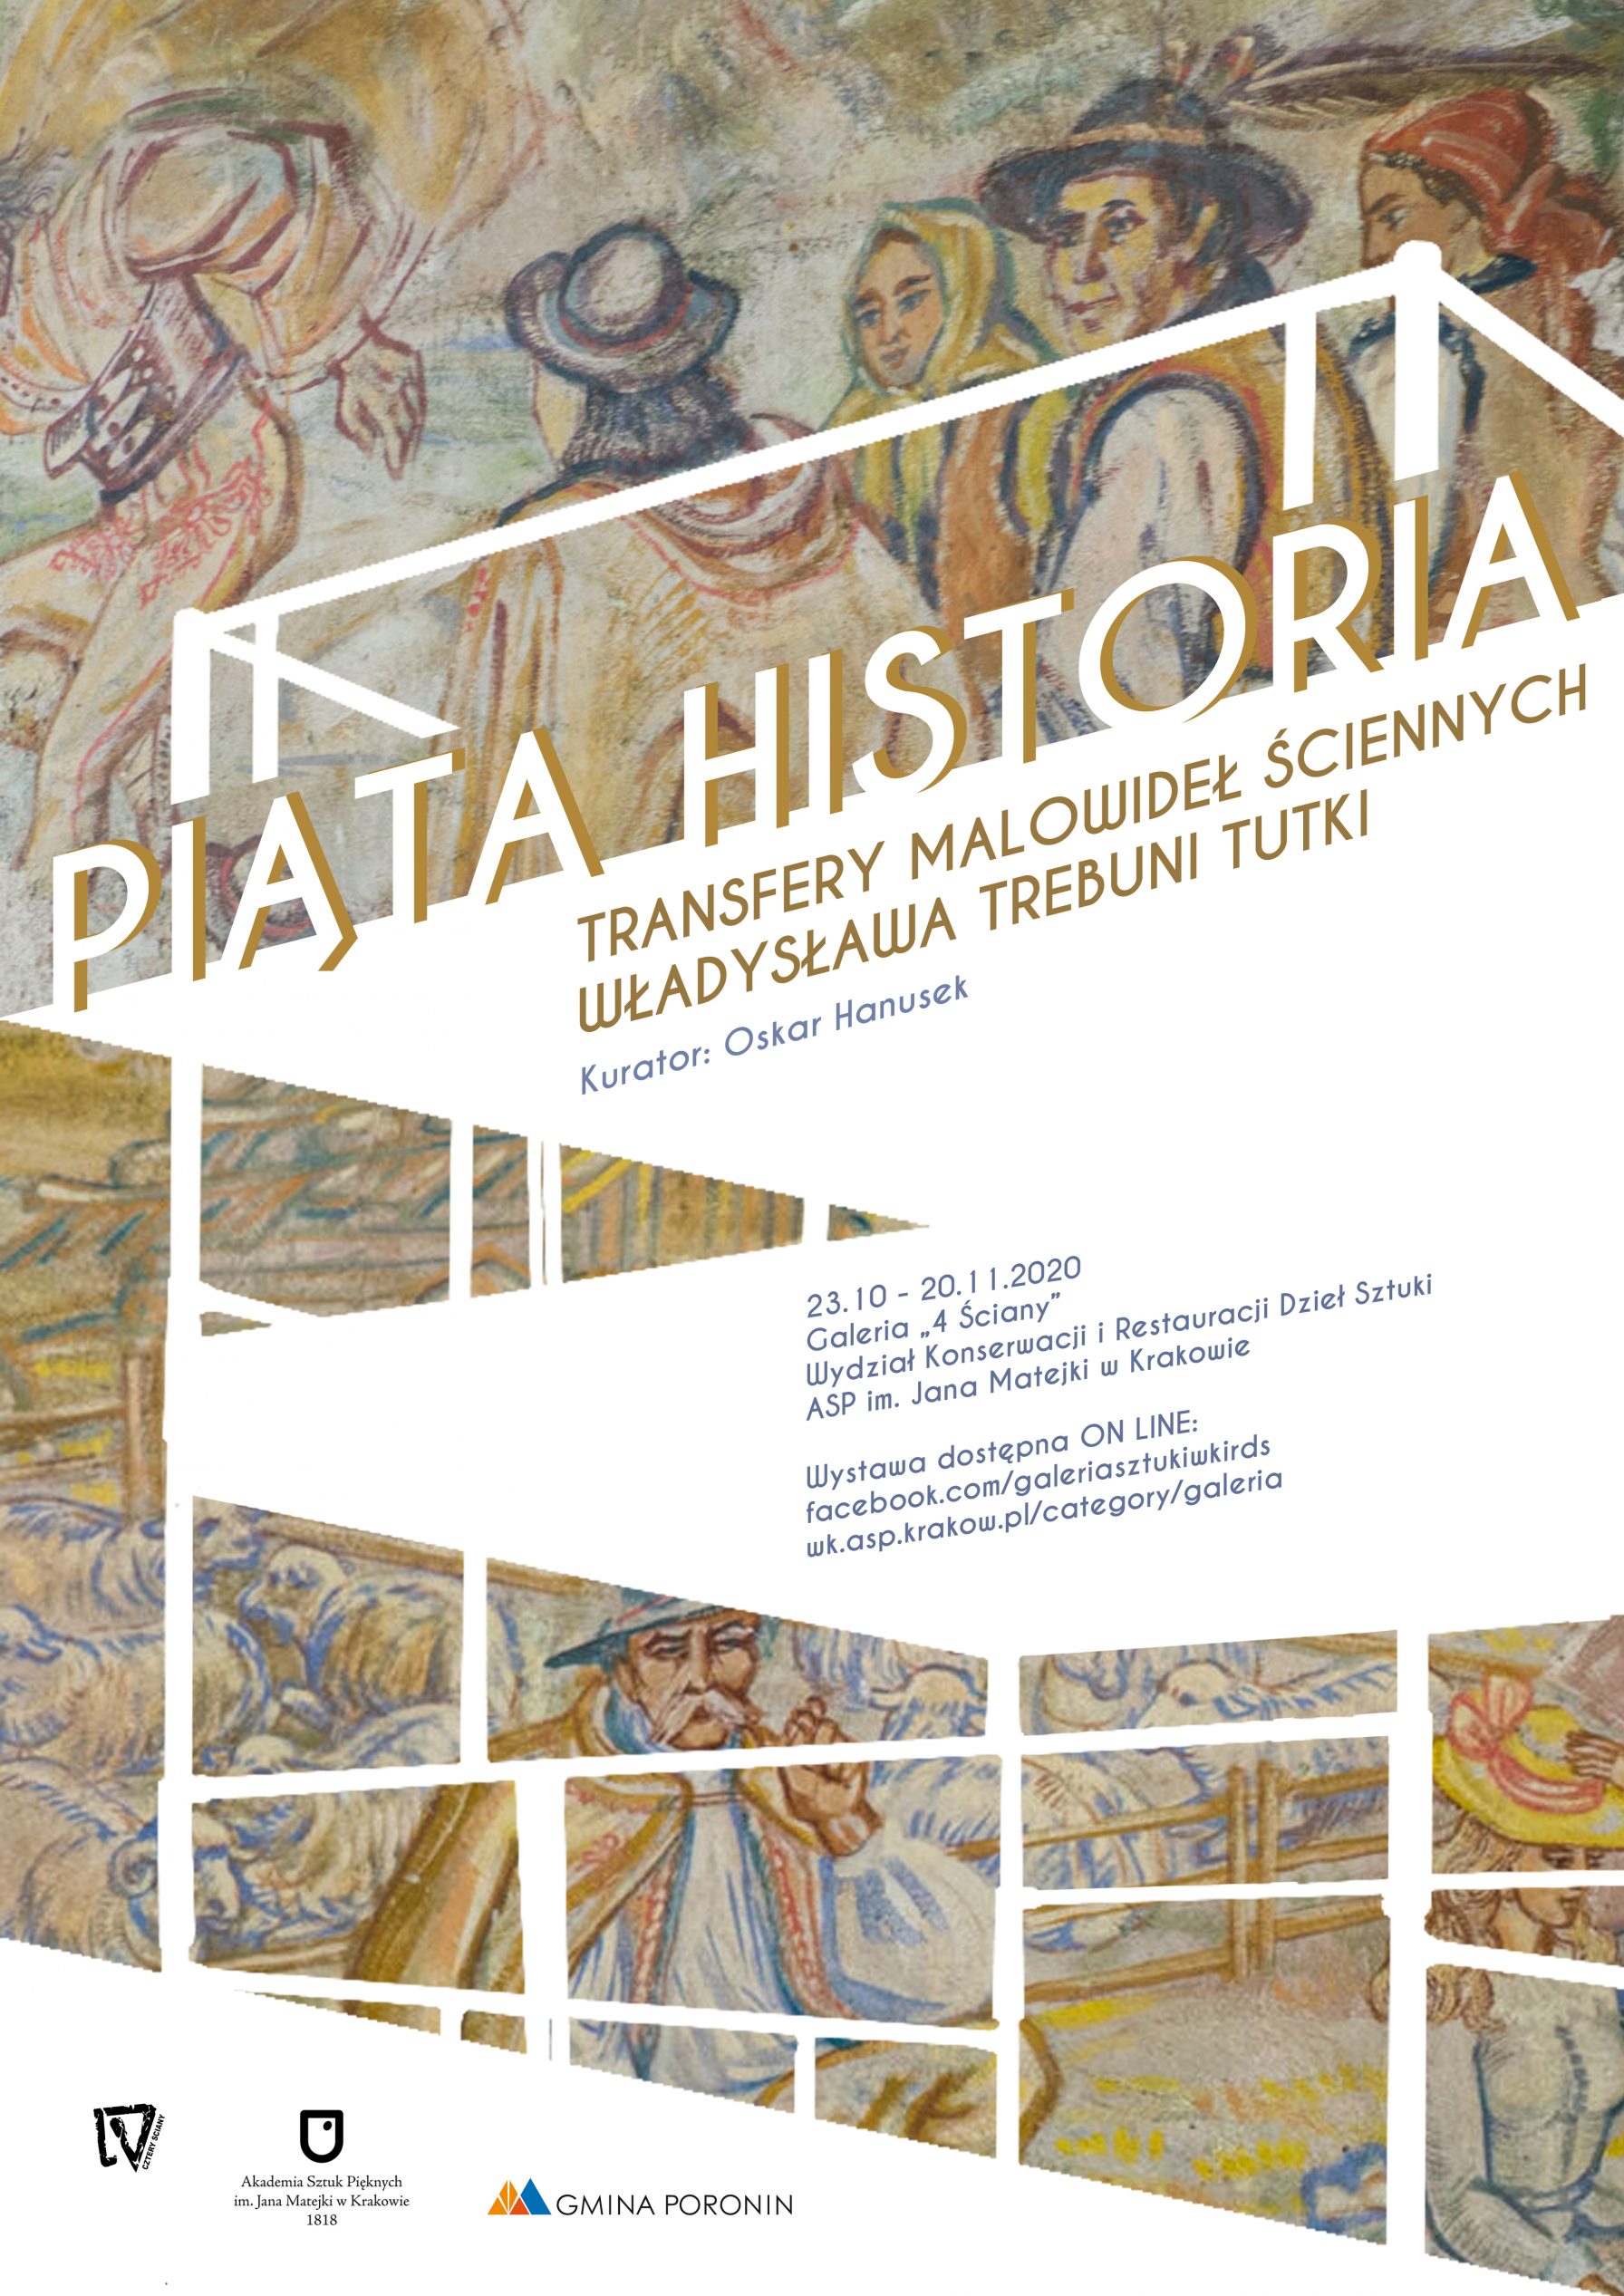 „Piąta historia” – wystawa transferów malowideł Władysława Trebuni Tutki (zapowiedź)